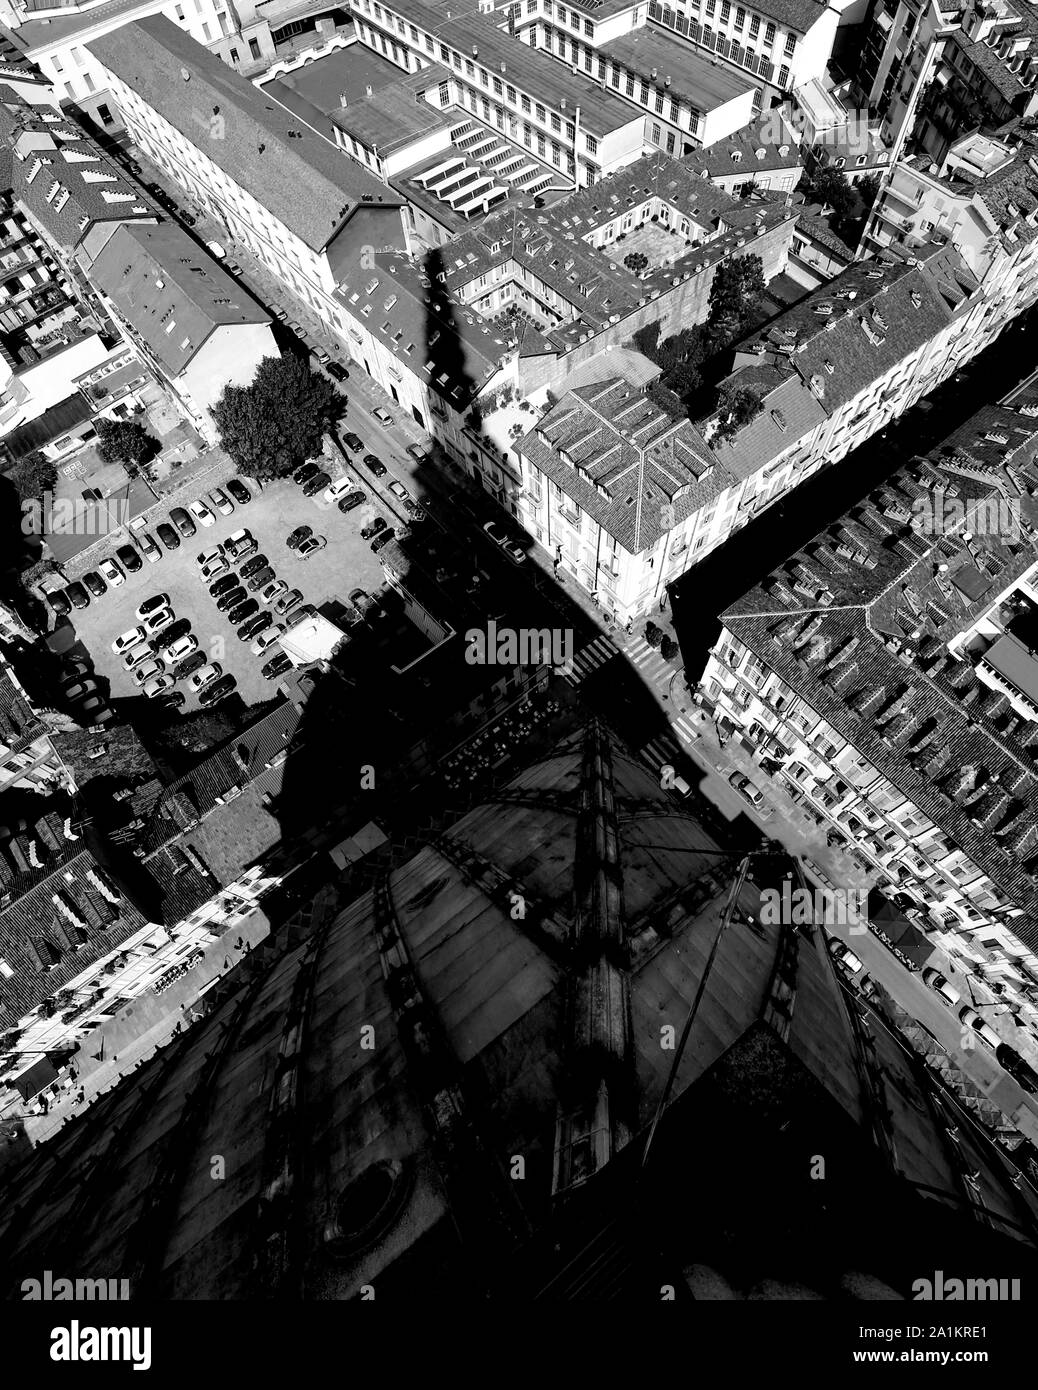 Turín, Italia - 27 de agosto, 2015: Vista aérea del monumento llamado la Mole Antonelliana y la sombra de la cúpula con el efecto blanco y negro Foto de stock